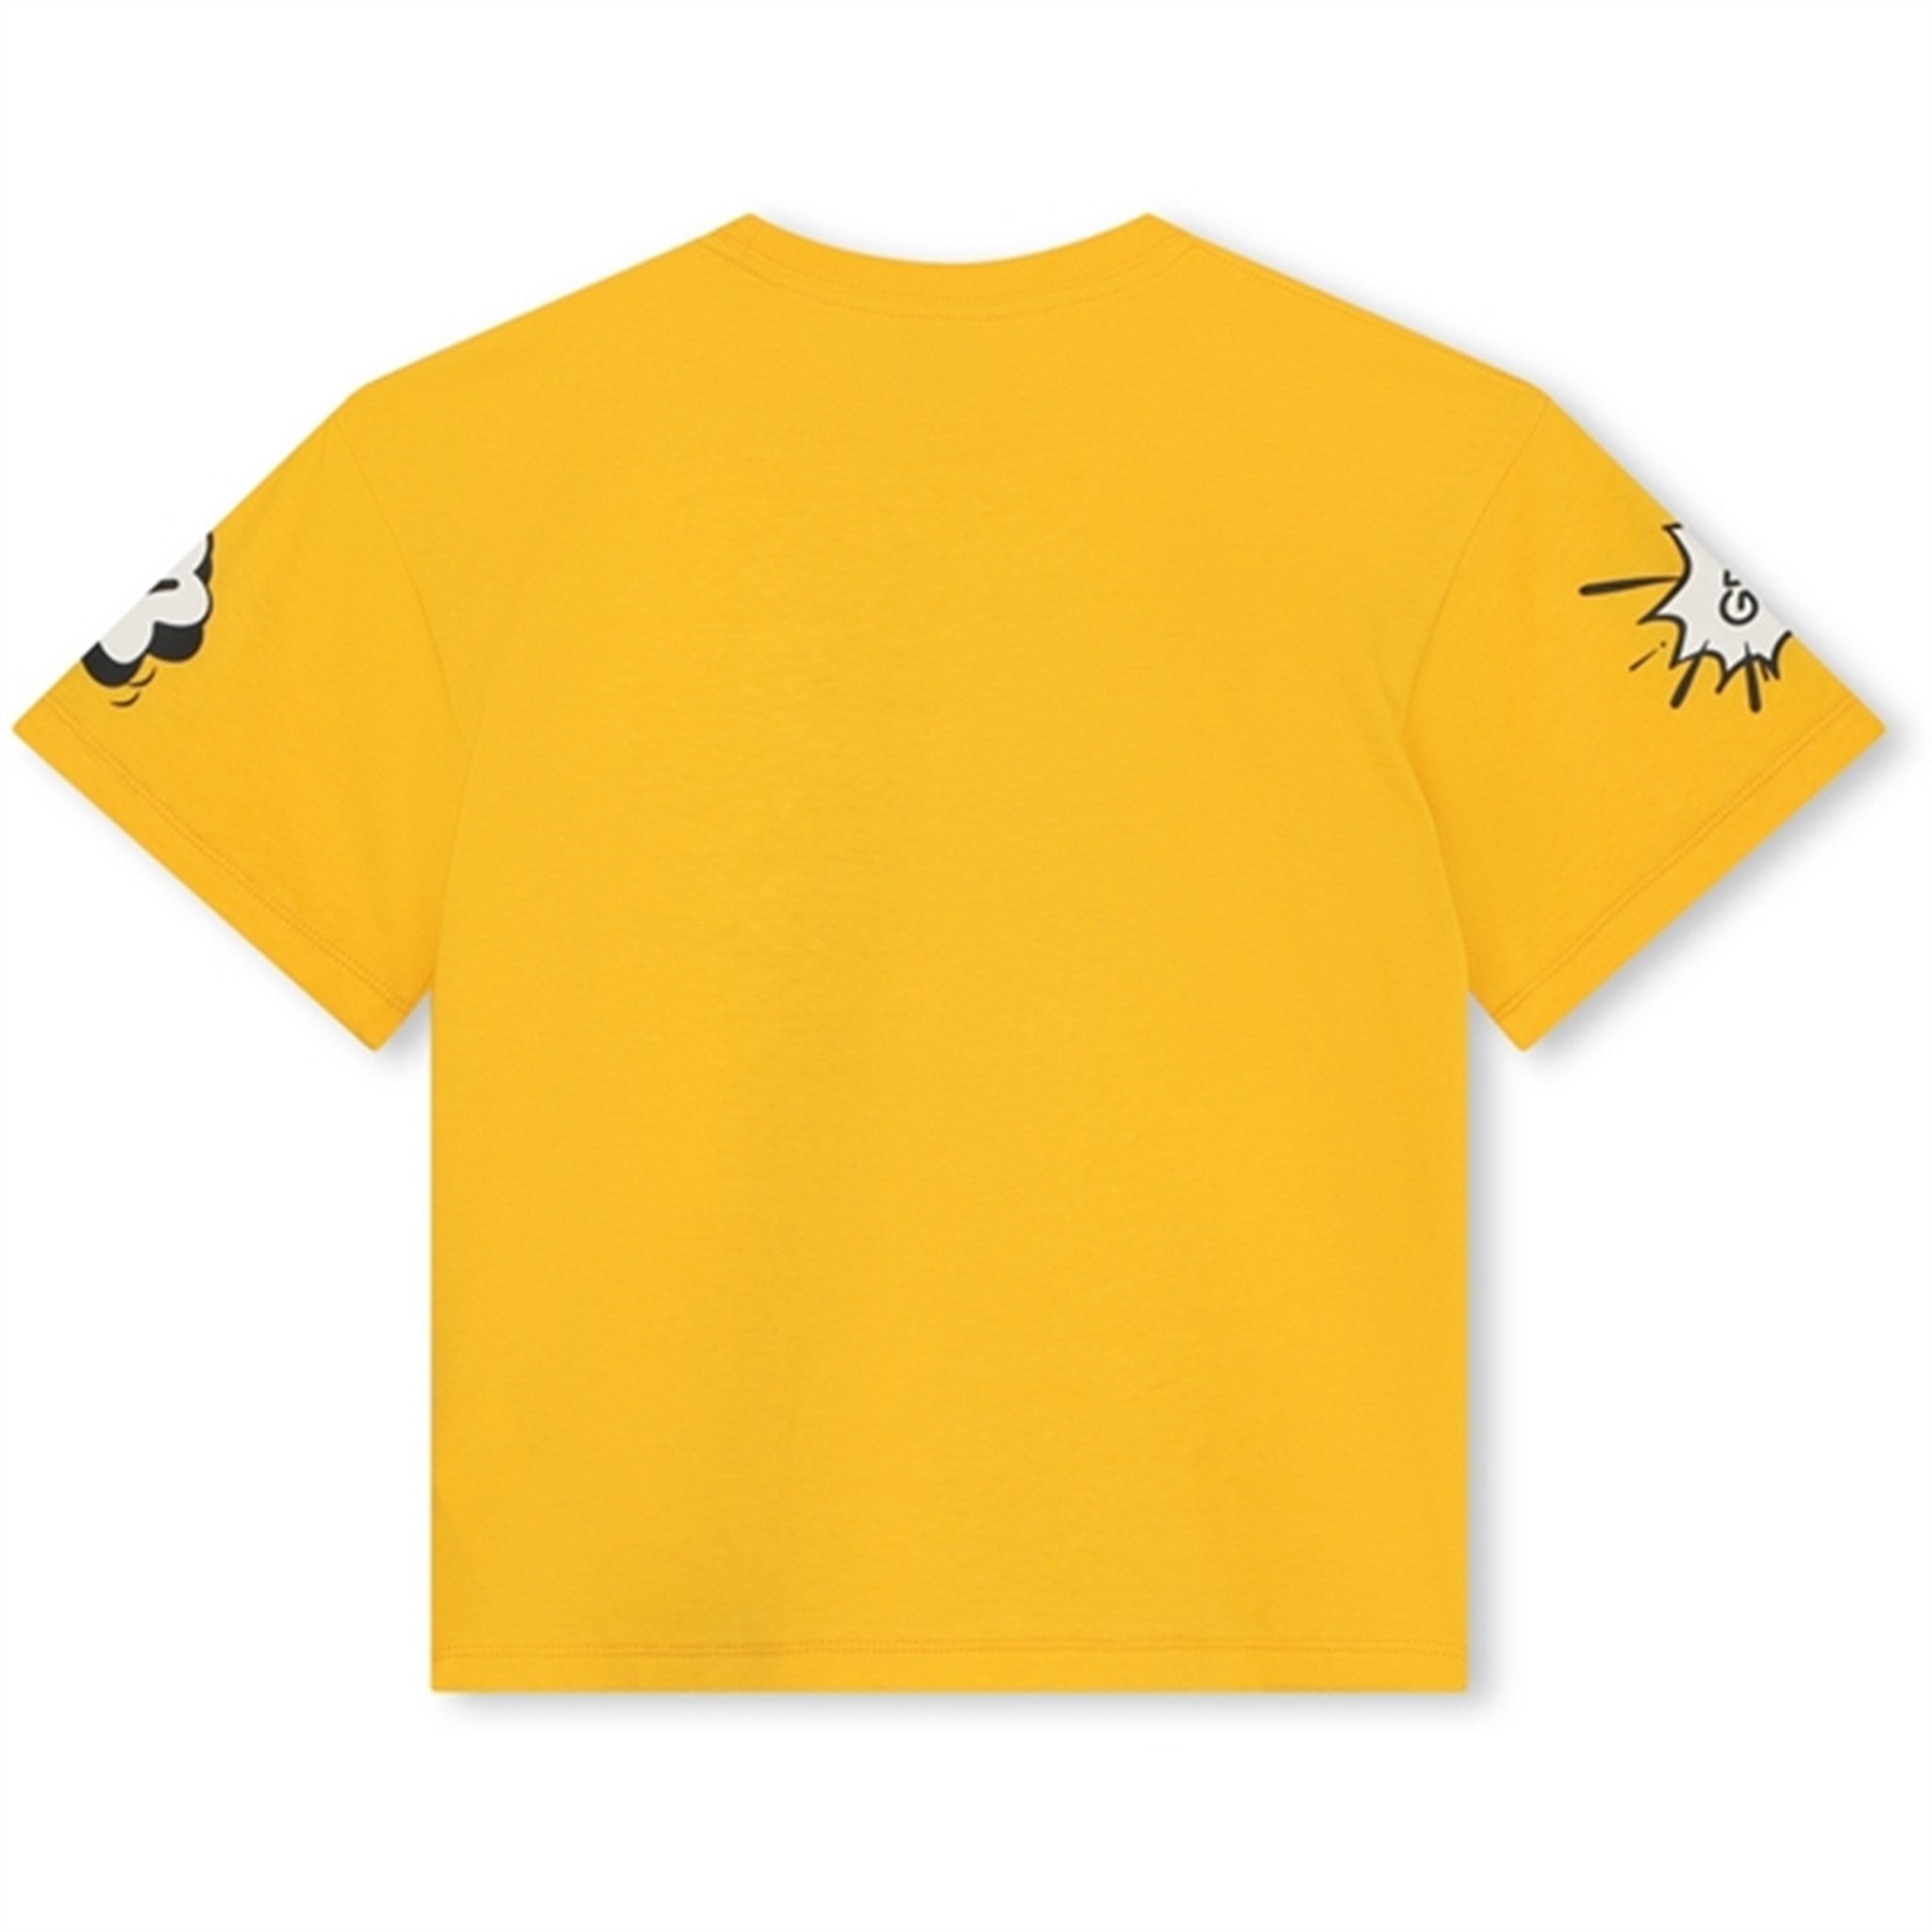 Kenzo Yellow T-shirt 2